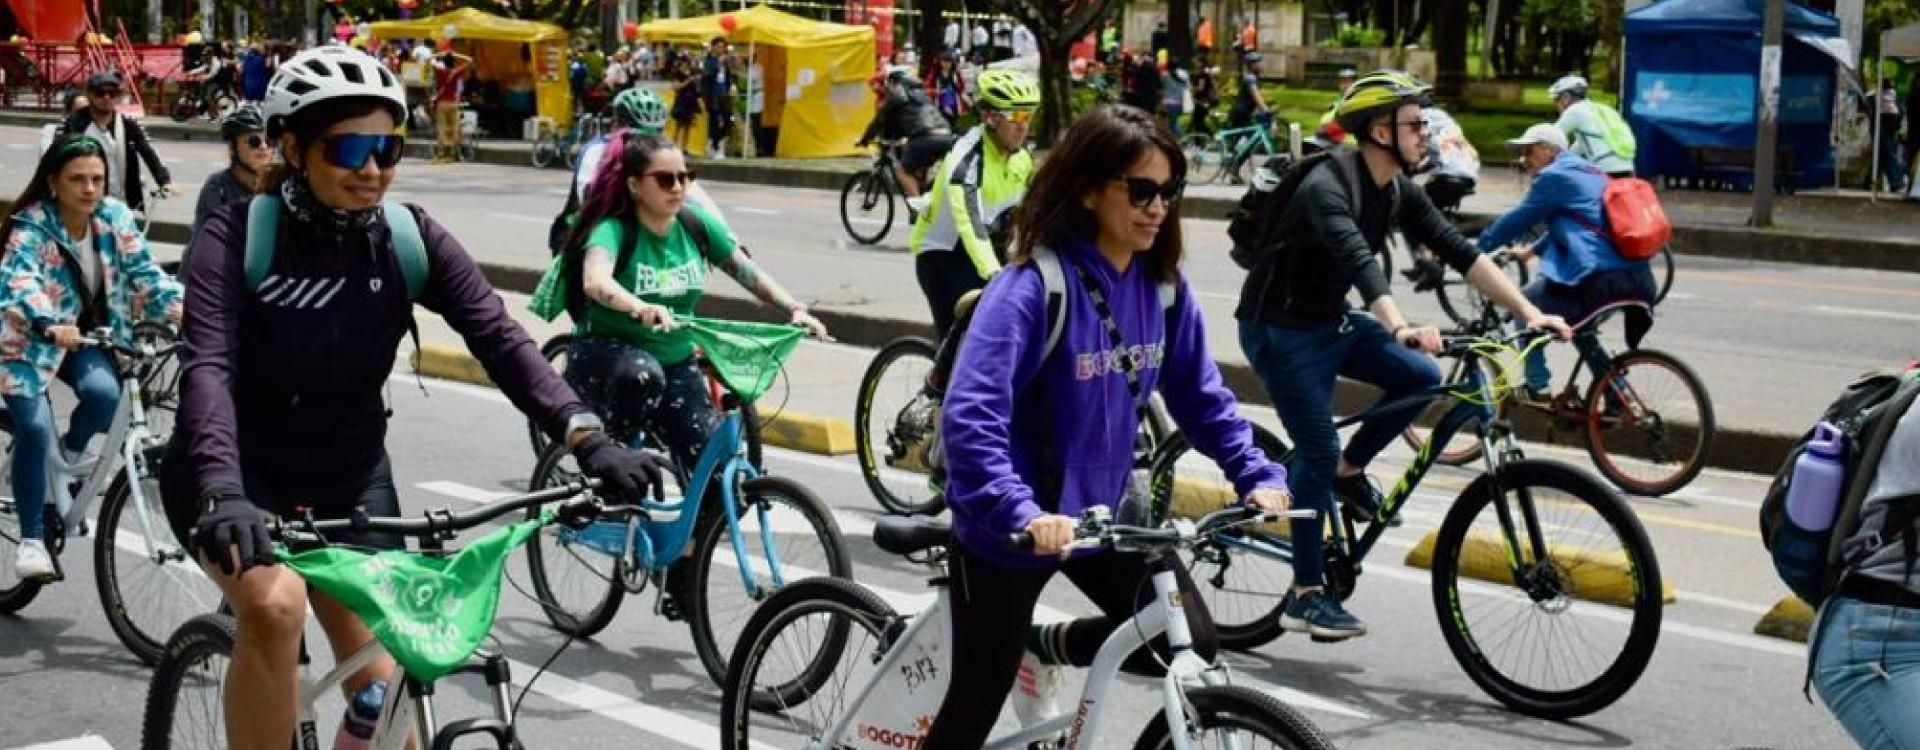 Mujeres en bici recorrido y feria de servicios para las mujeres de Bogotá